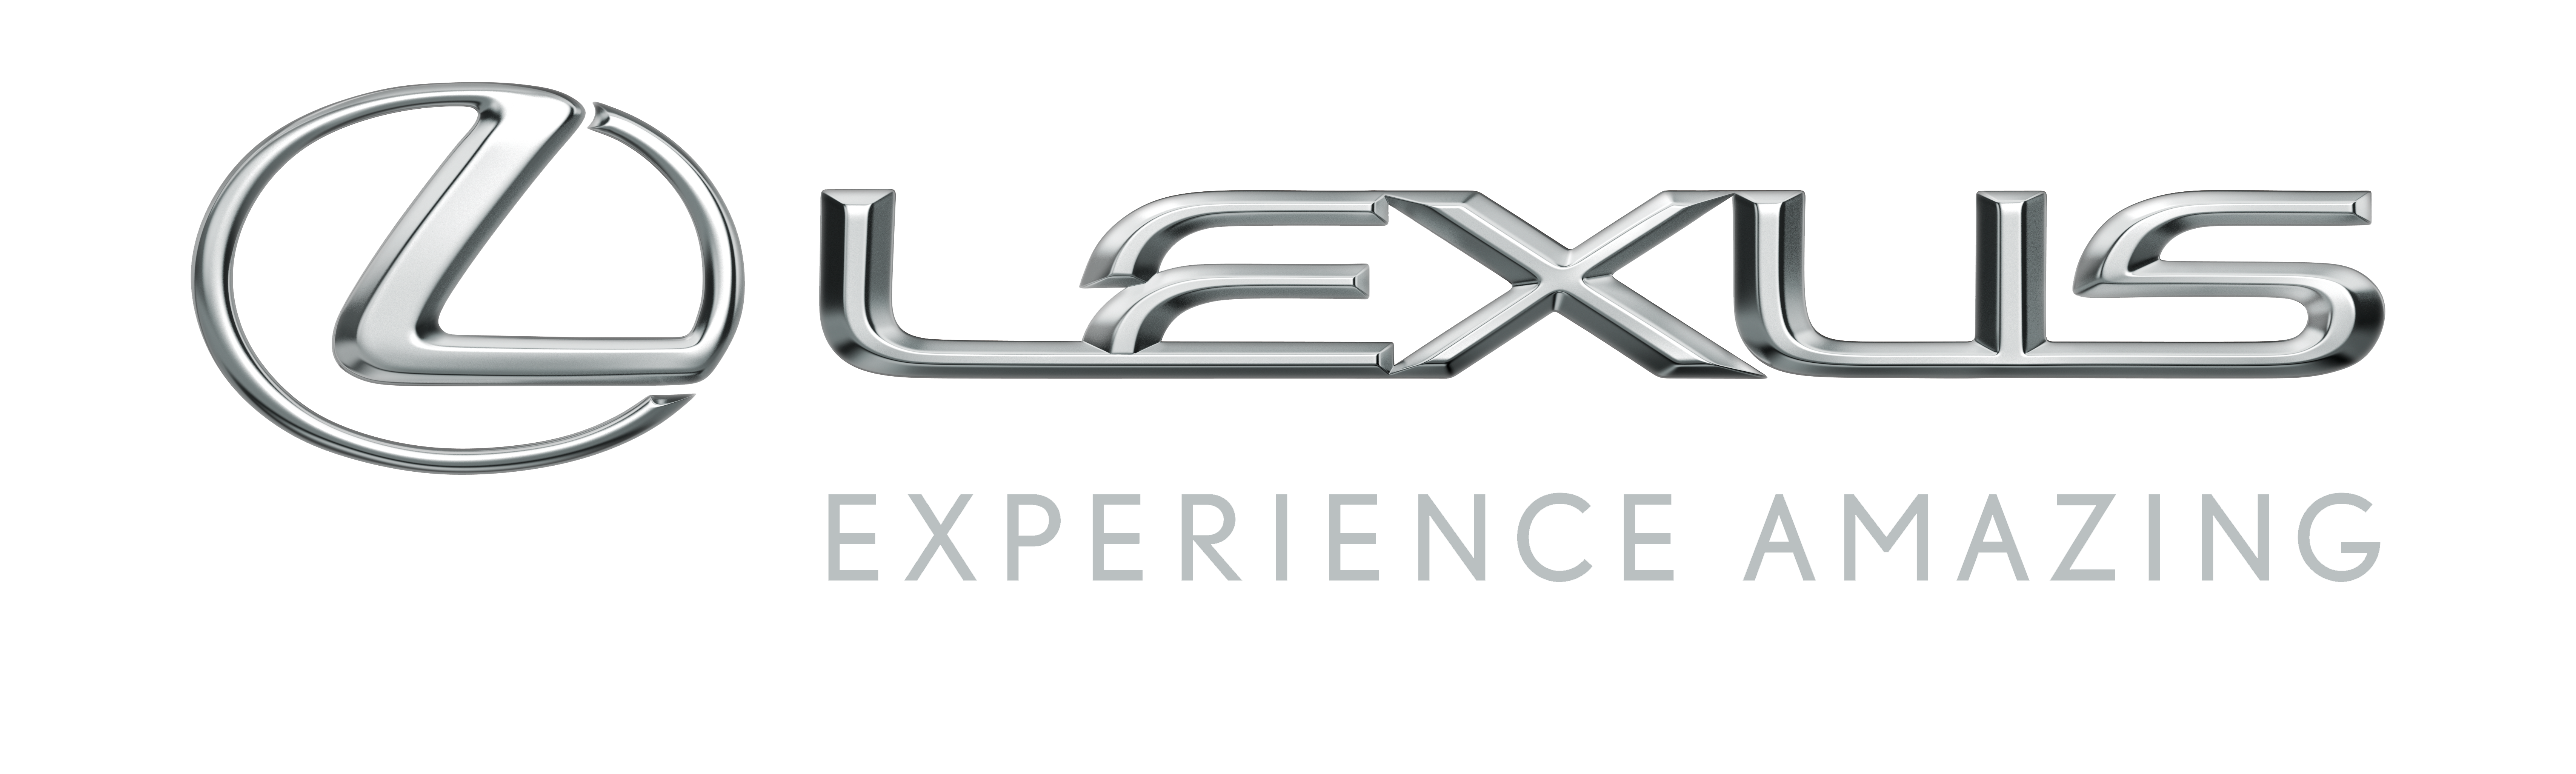 Car Is Ls Vehicle Brands Logo Lexus Clipart